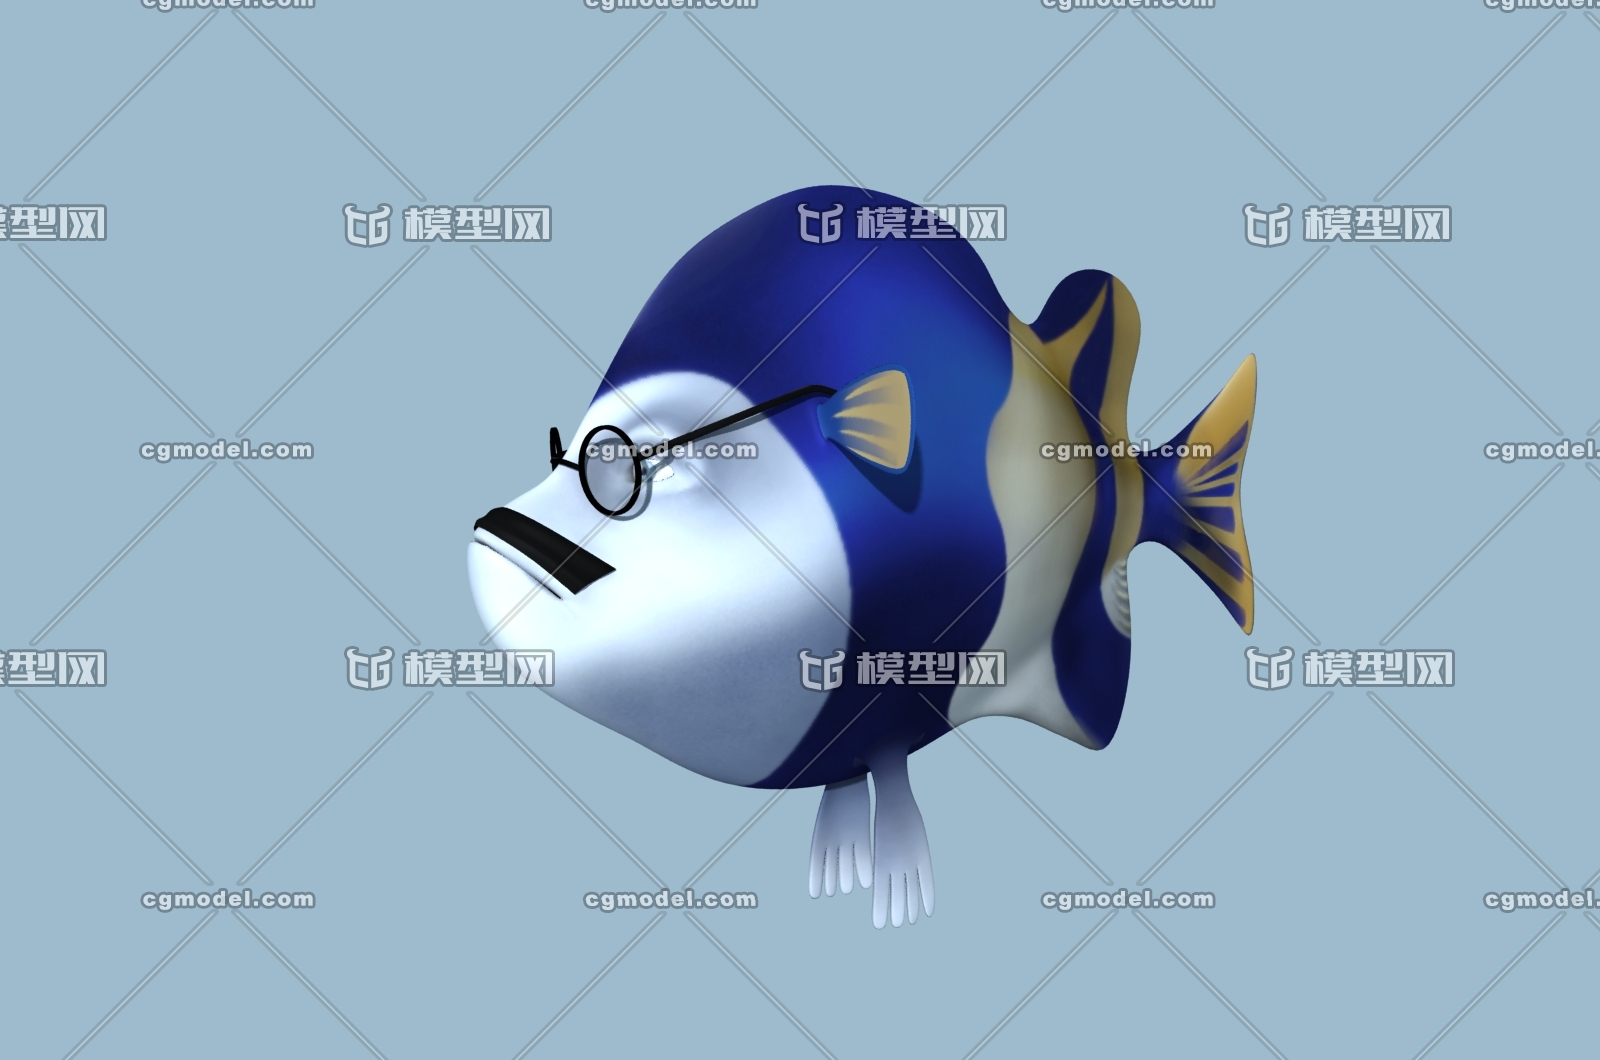 戴眼镜鱼博士 博士鱼 蓝色卡通鱼 海鱼